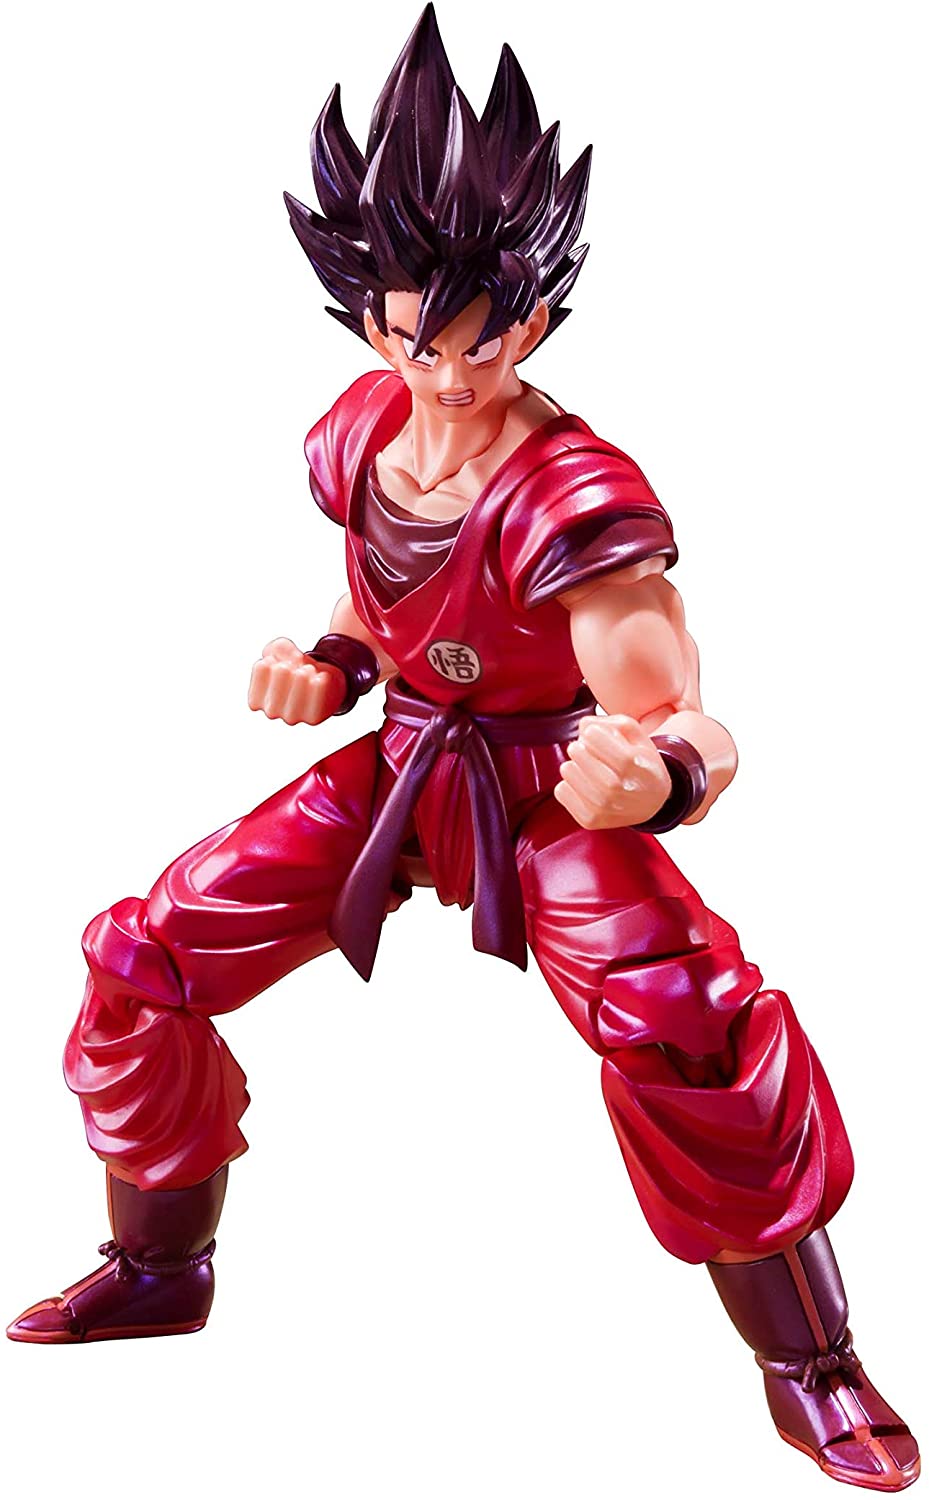 Tamashi Nations Bandai S.H. Figuarts Son Goku Kaioken Ver. Action Figure